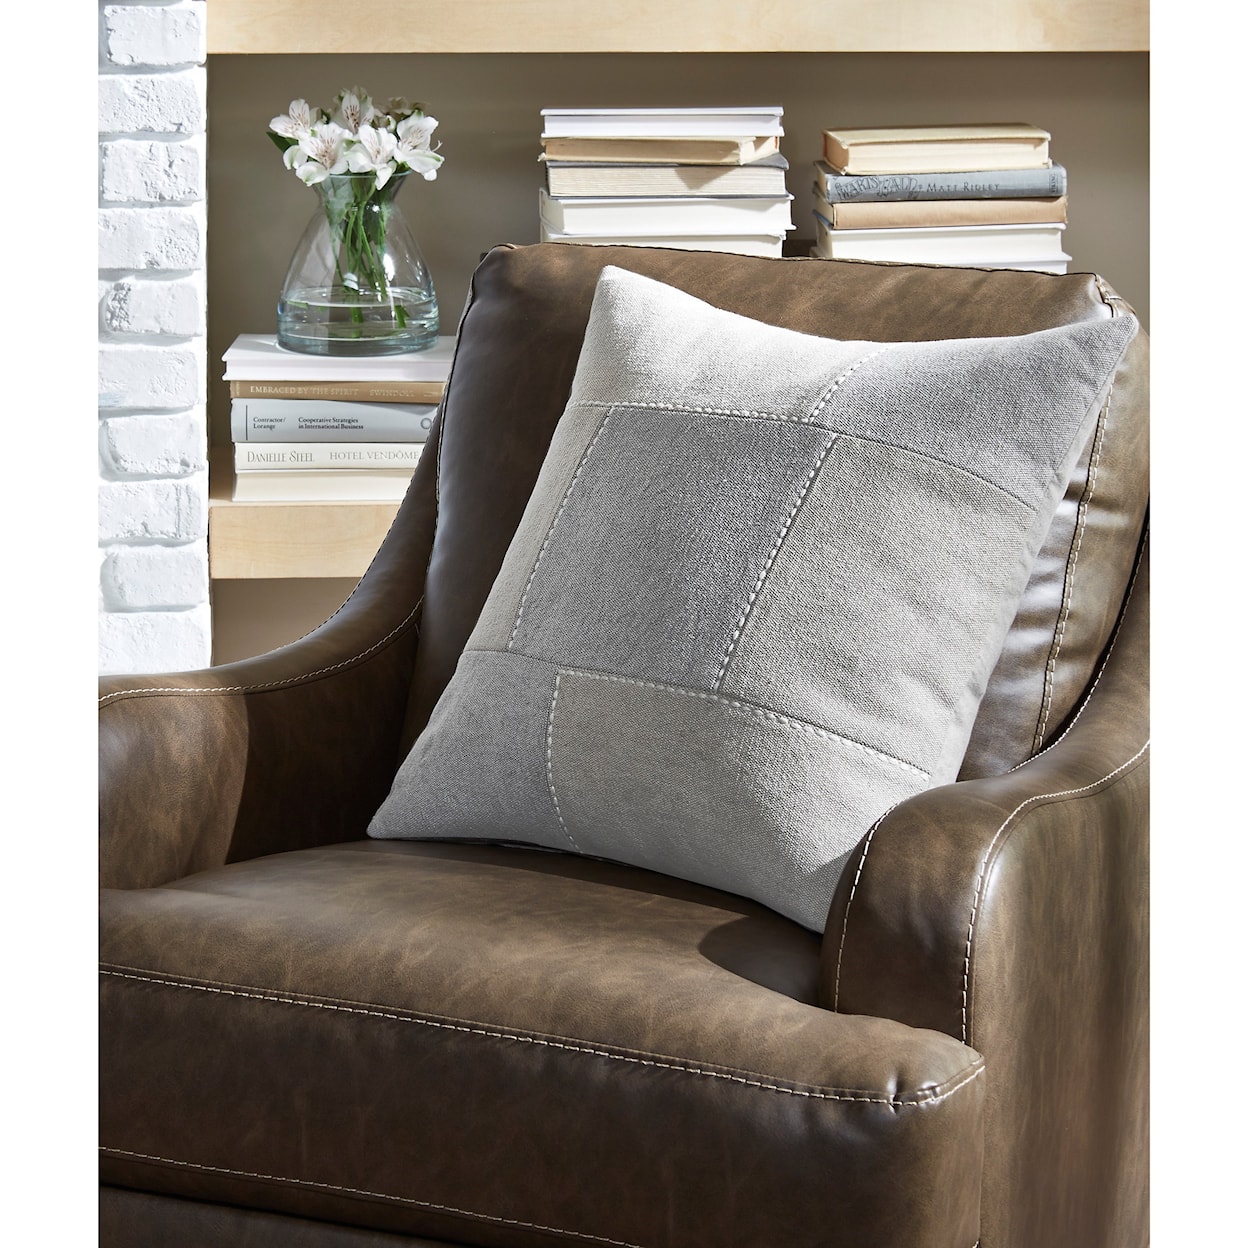 Ashley Furniture Signature Design Pillows Lareina Gray/Tan Pillow